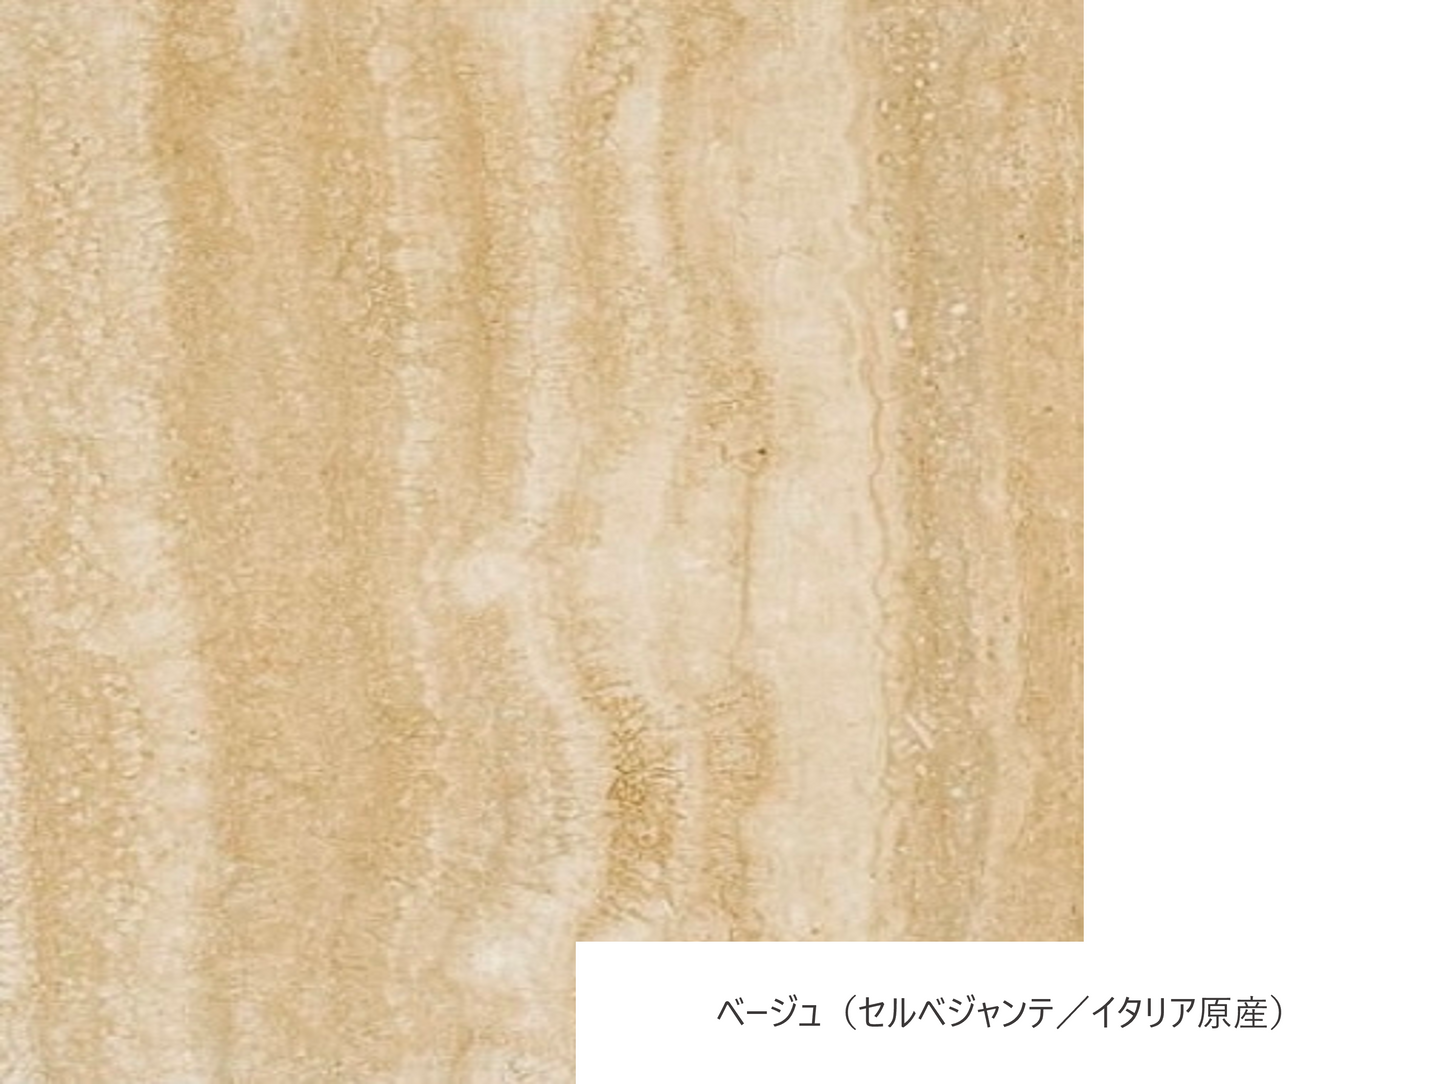 sekka -丸- 大理石ローテーブル